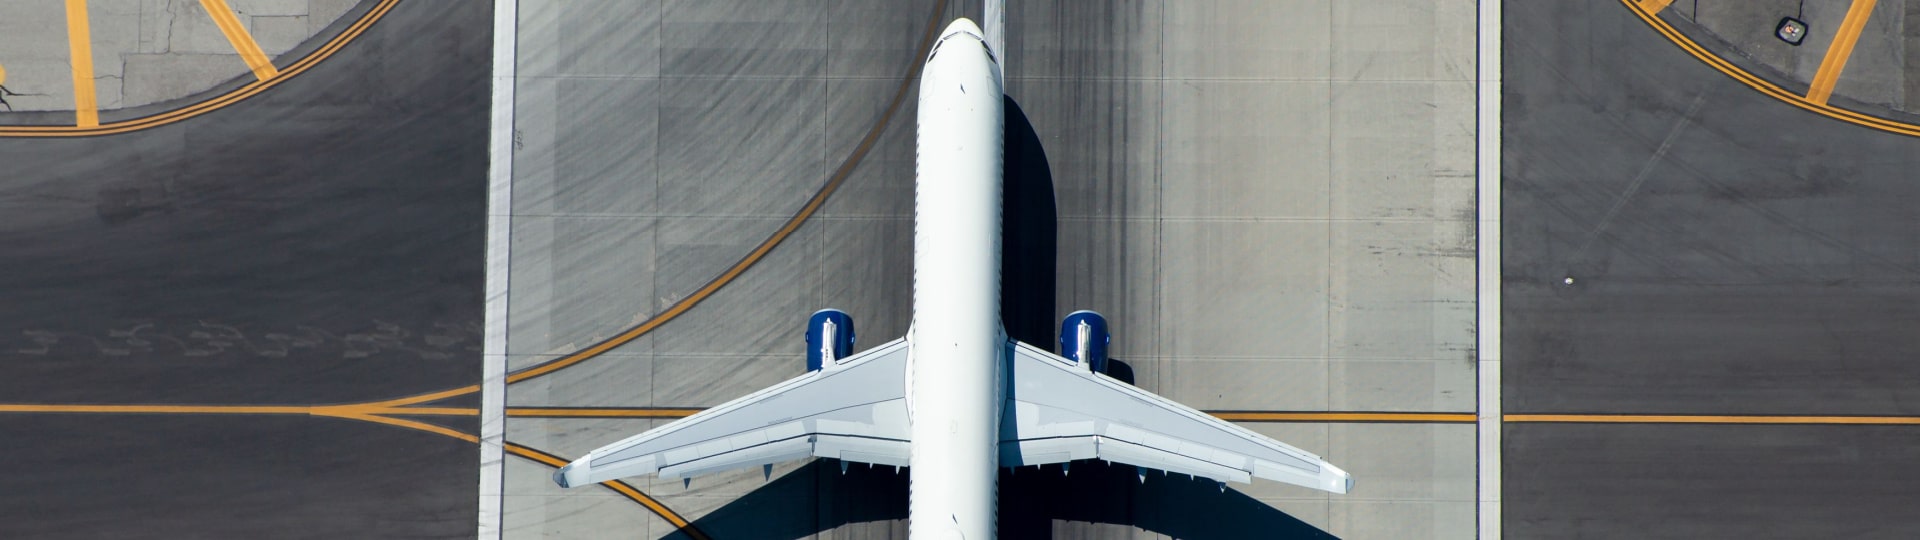 Airbus loni zvýšil provozní zisk o 16 procent